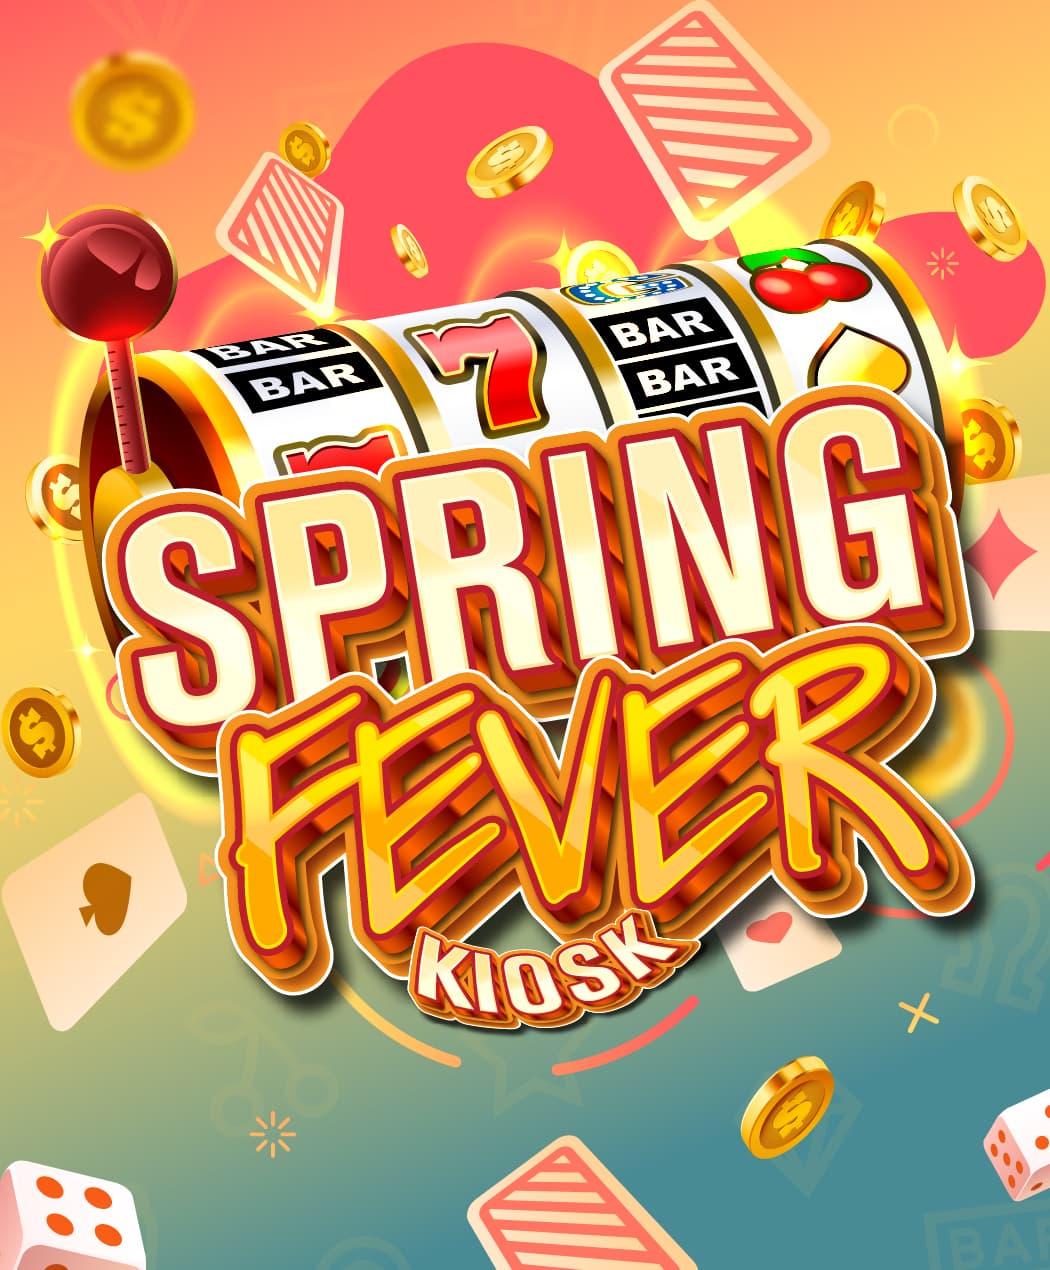 Spring Fever Kiosk